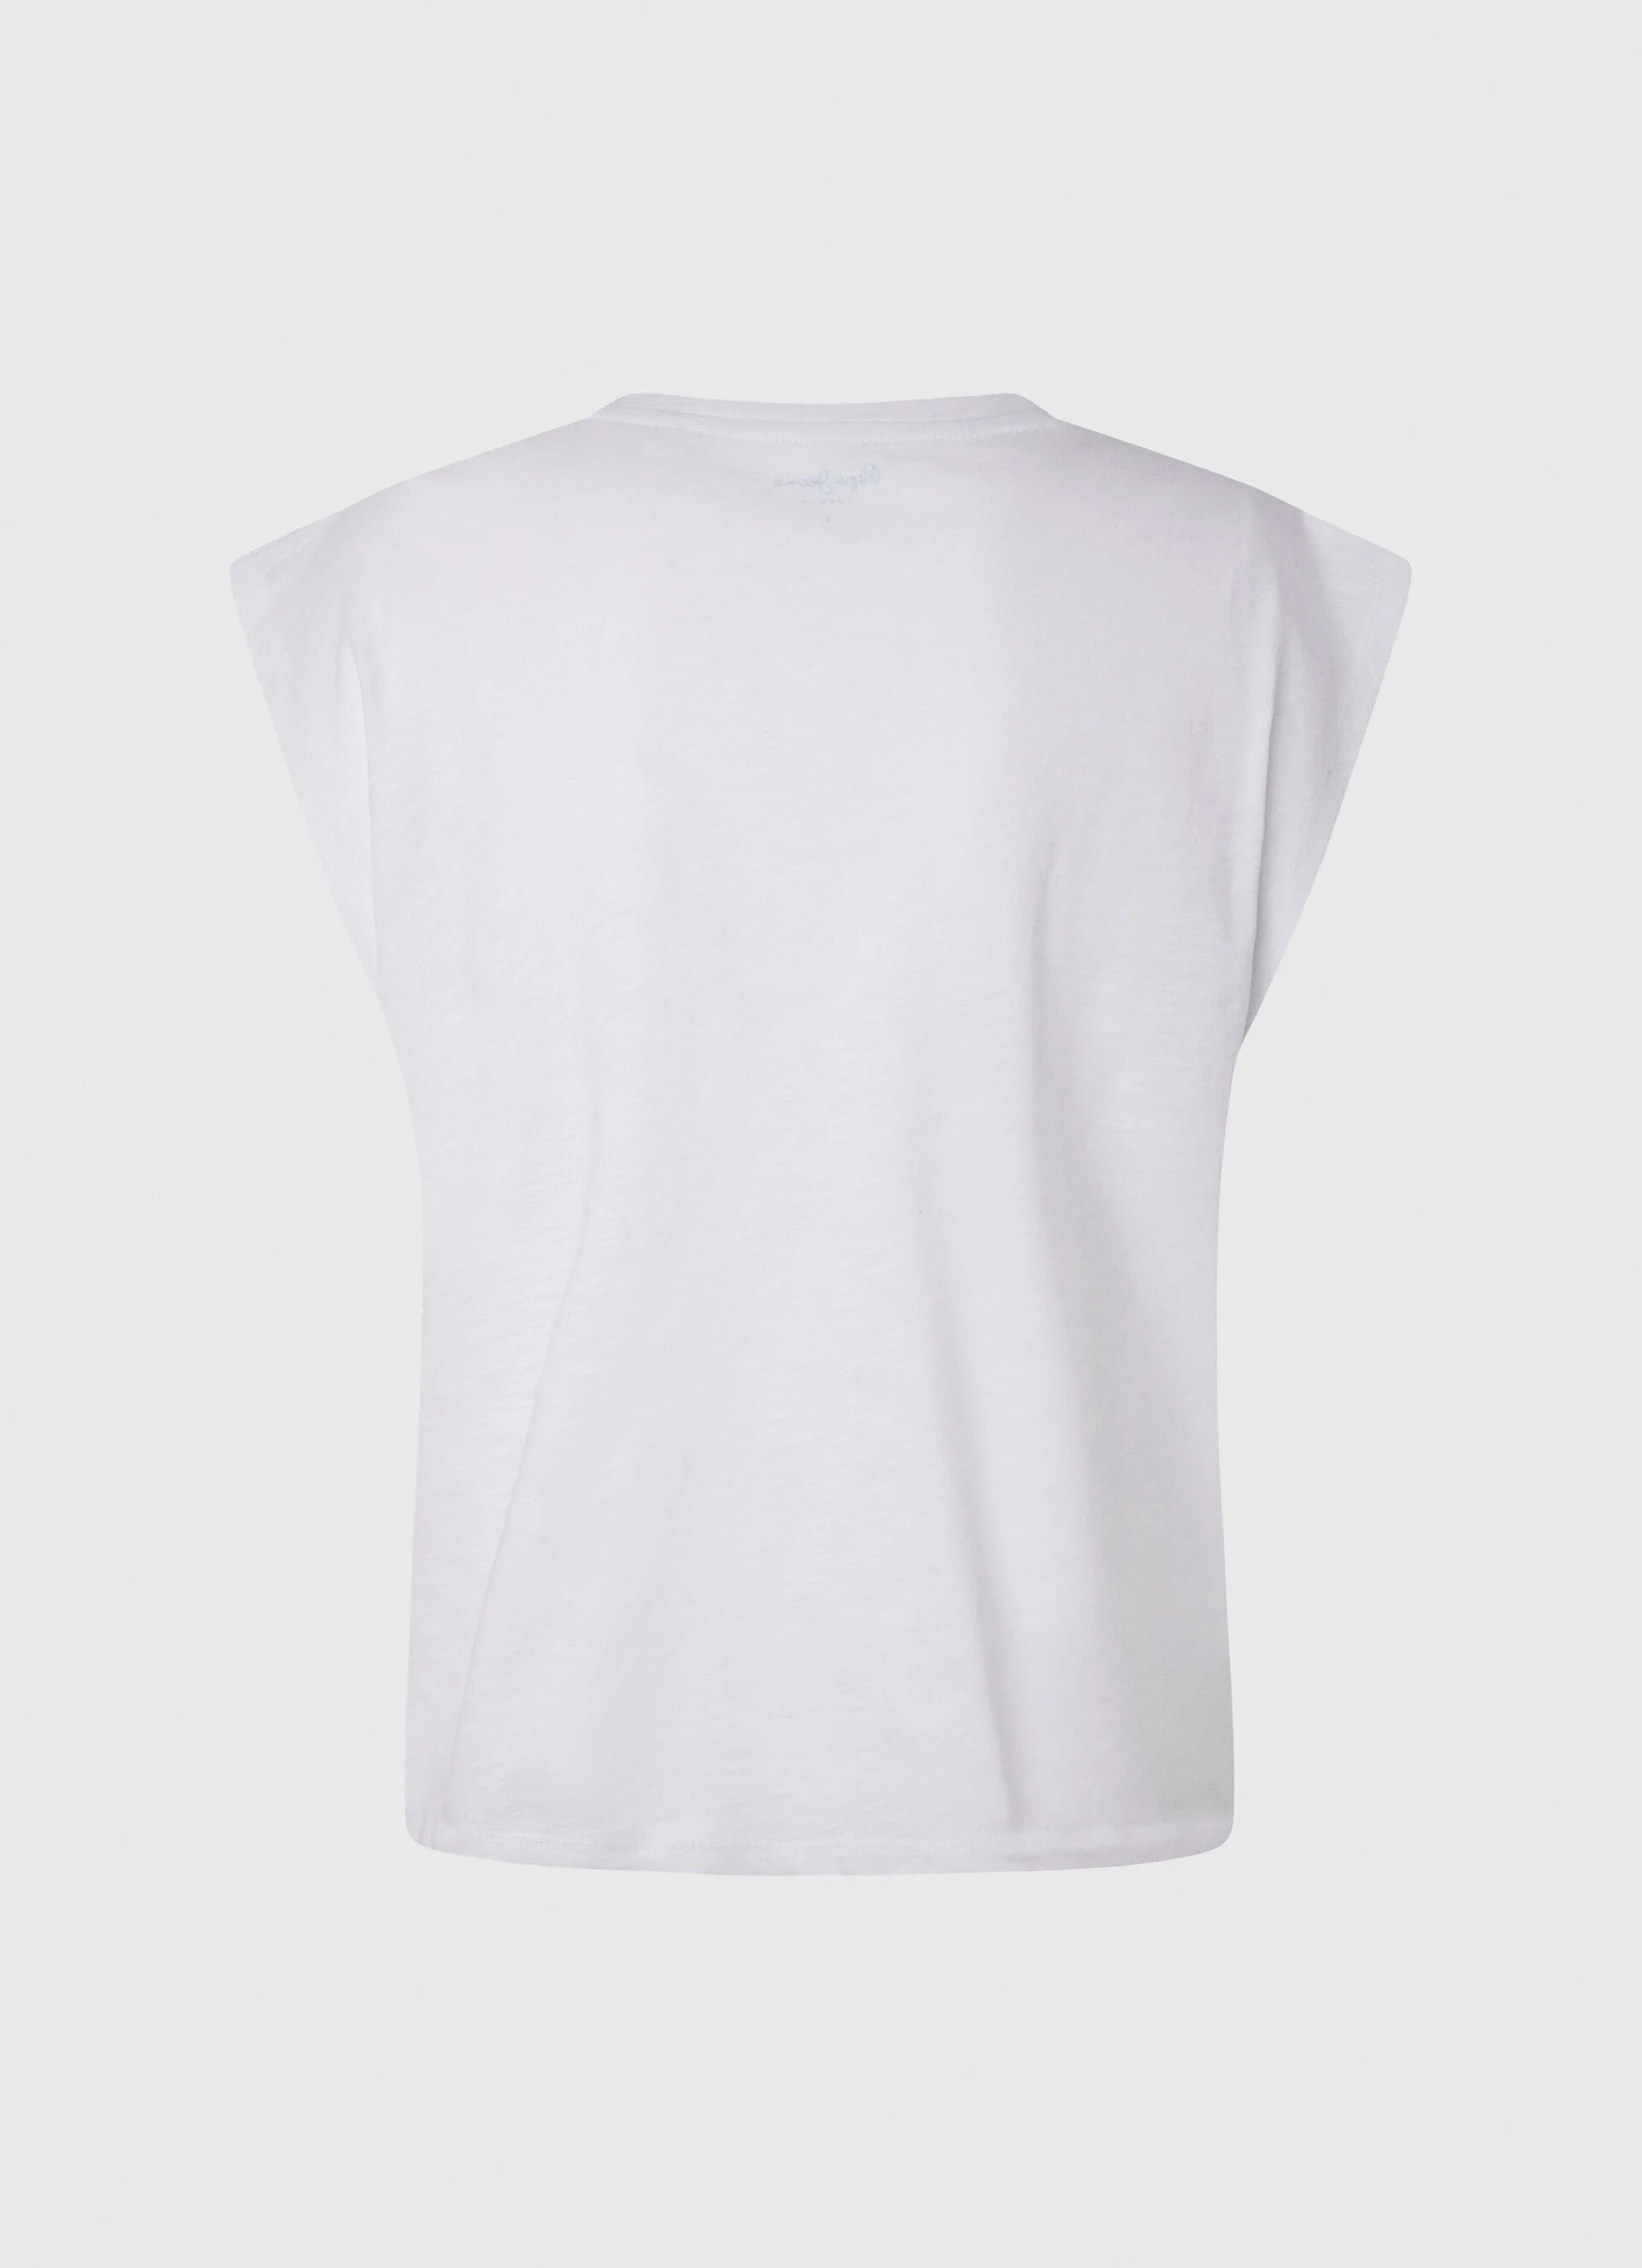 Pepe jeans maglietta senza manica con borchie Morgana PL505425 800 white